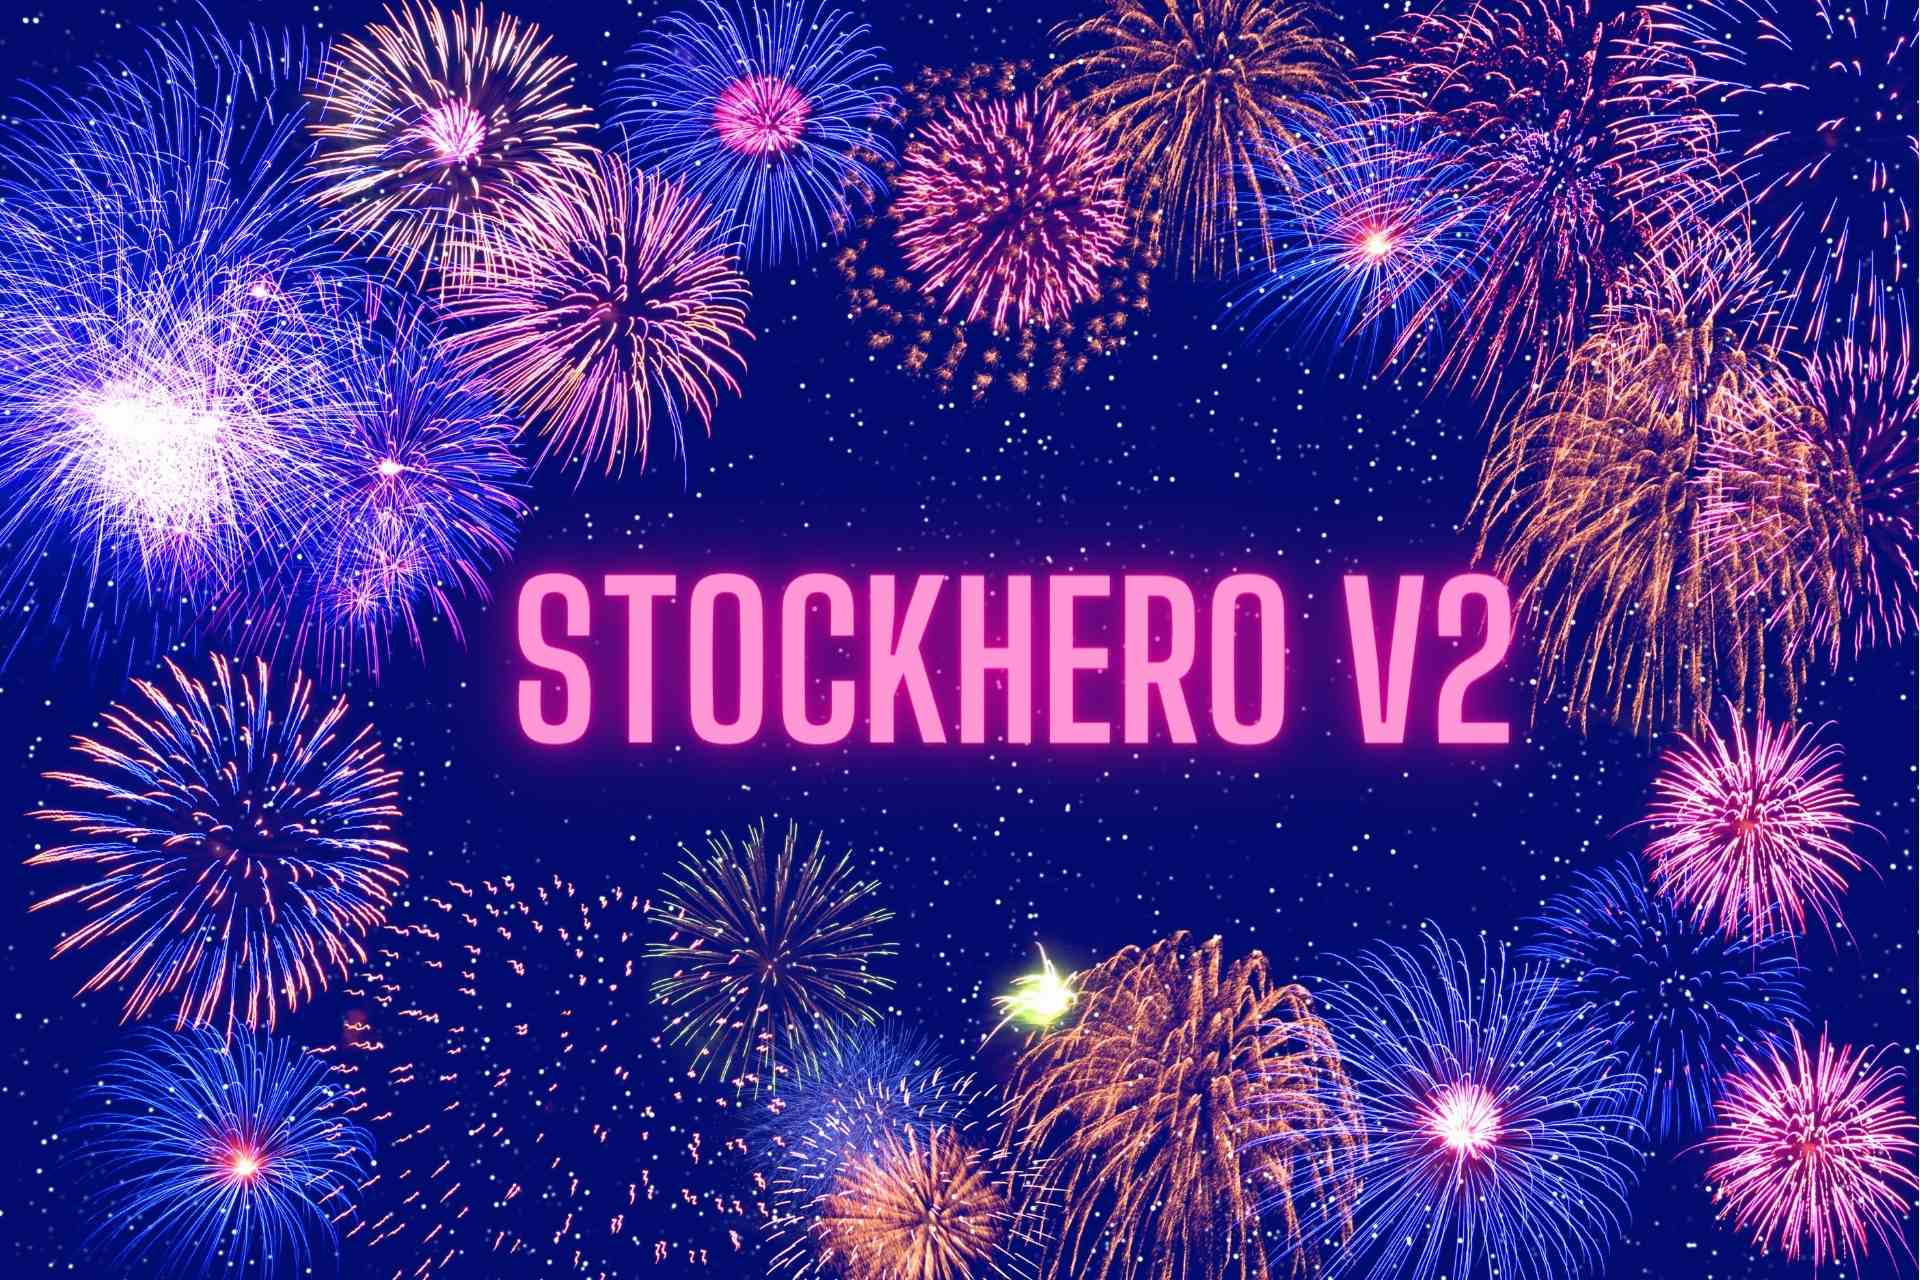 StockHero V2